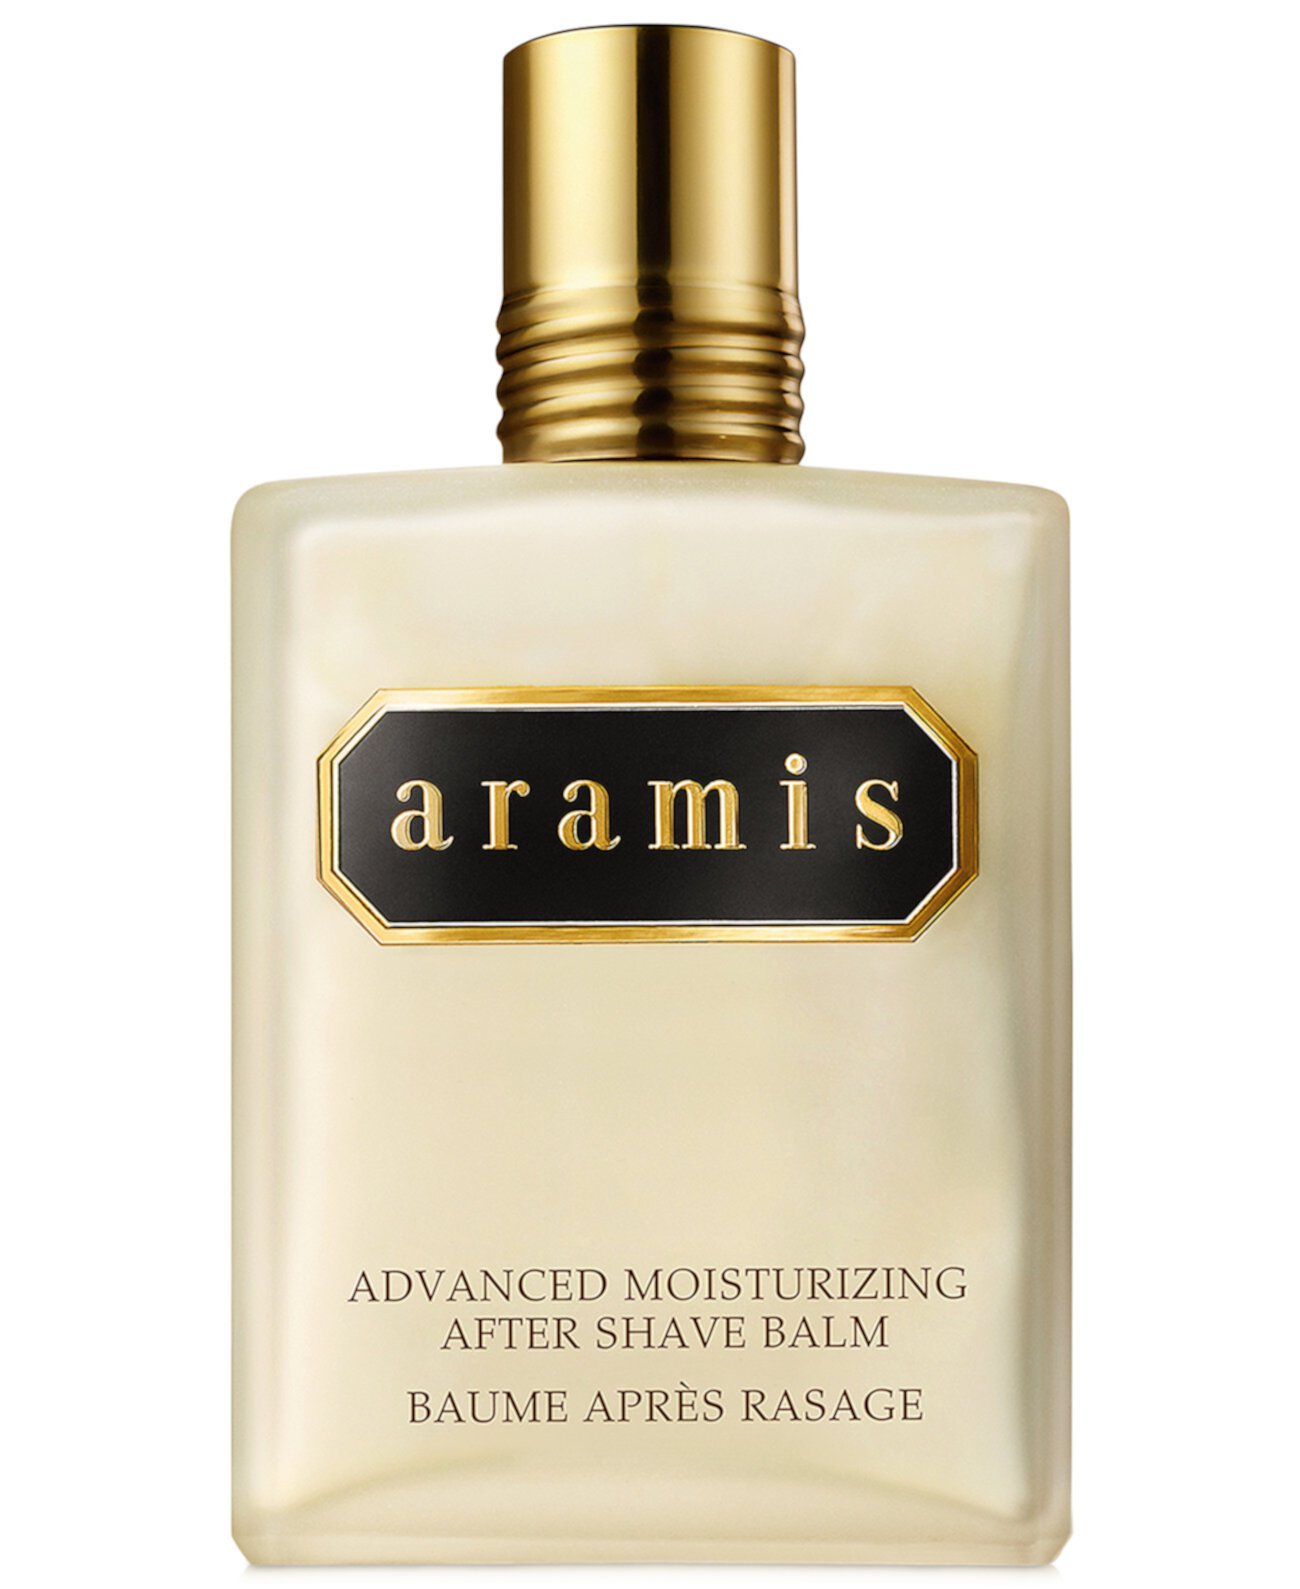 Улучшенное увлажняющее средство после бритья для мужчин для мужчин, 4,1 унции. Aramis